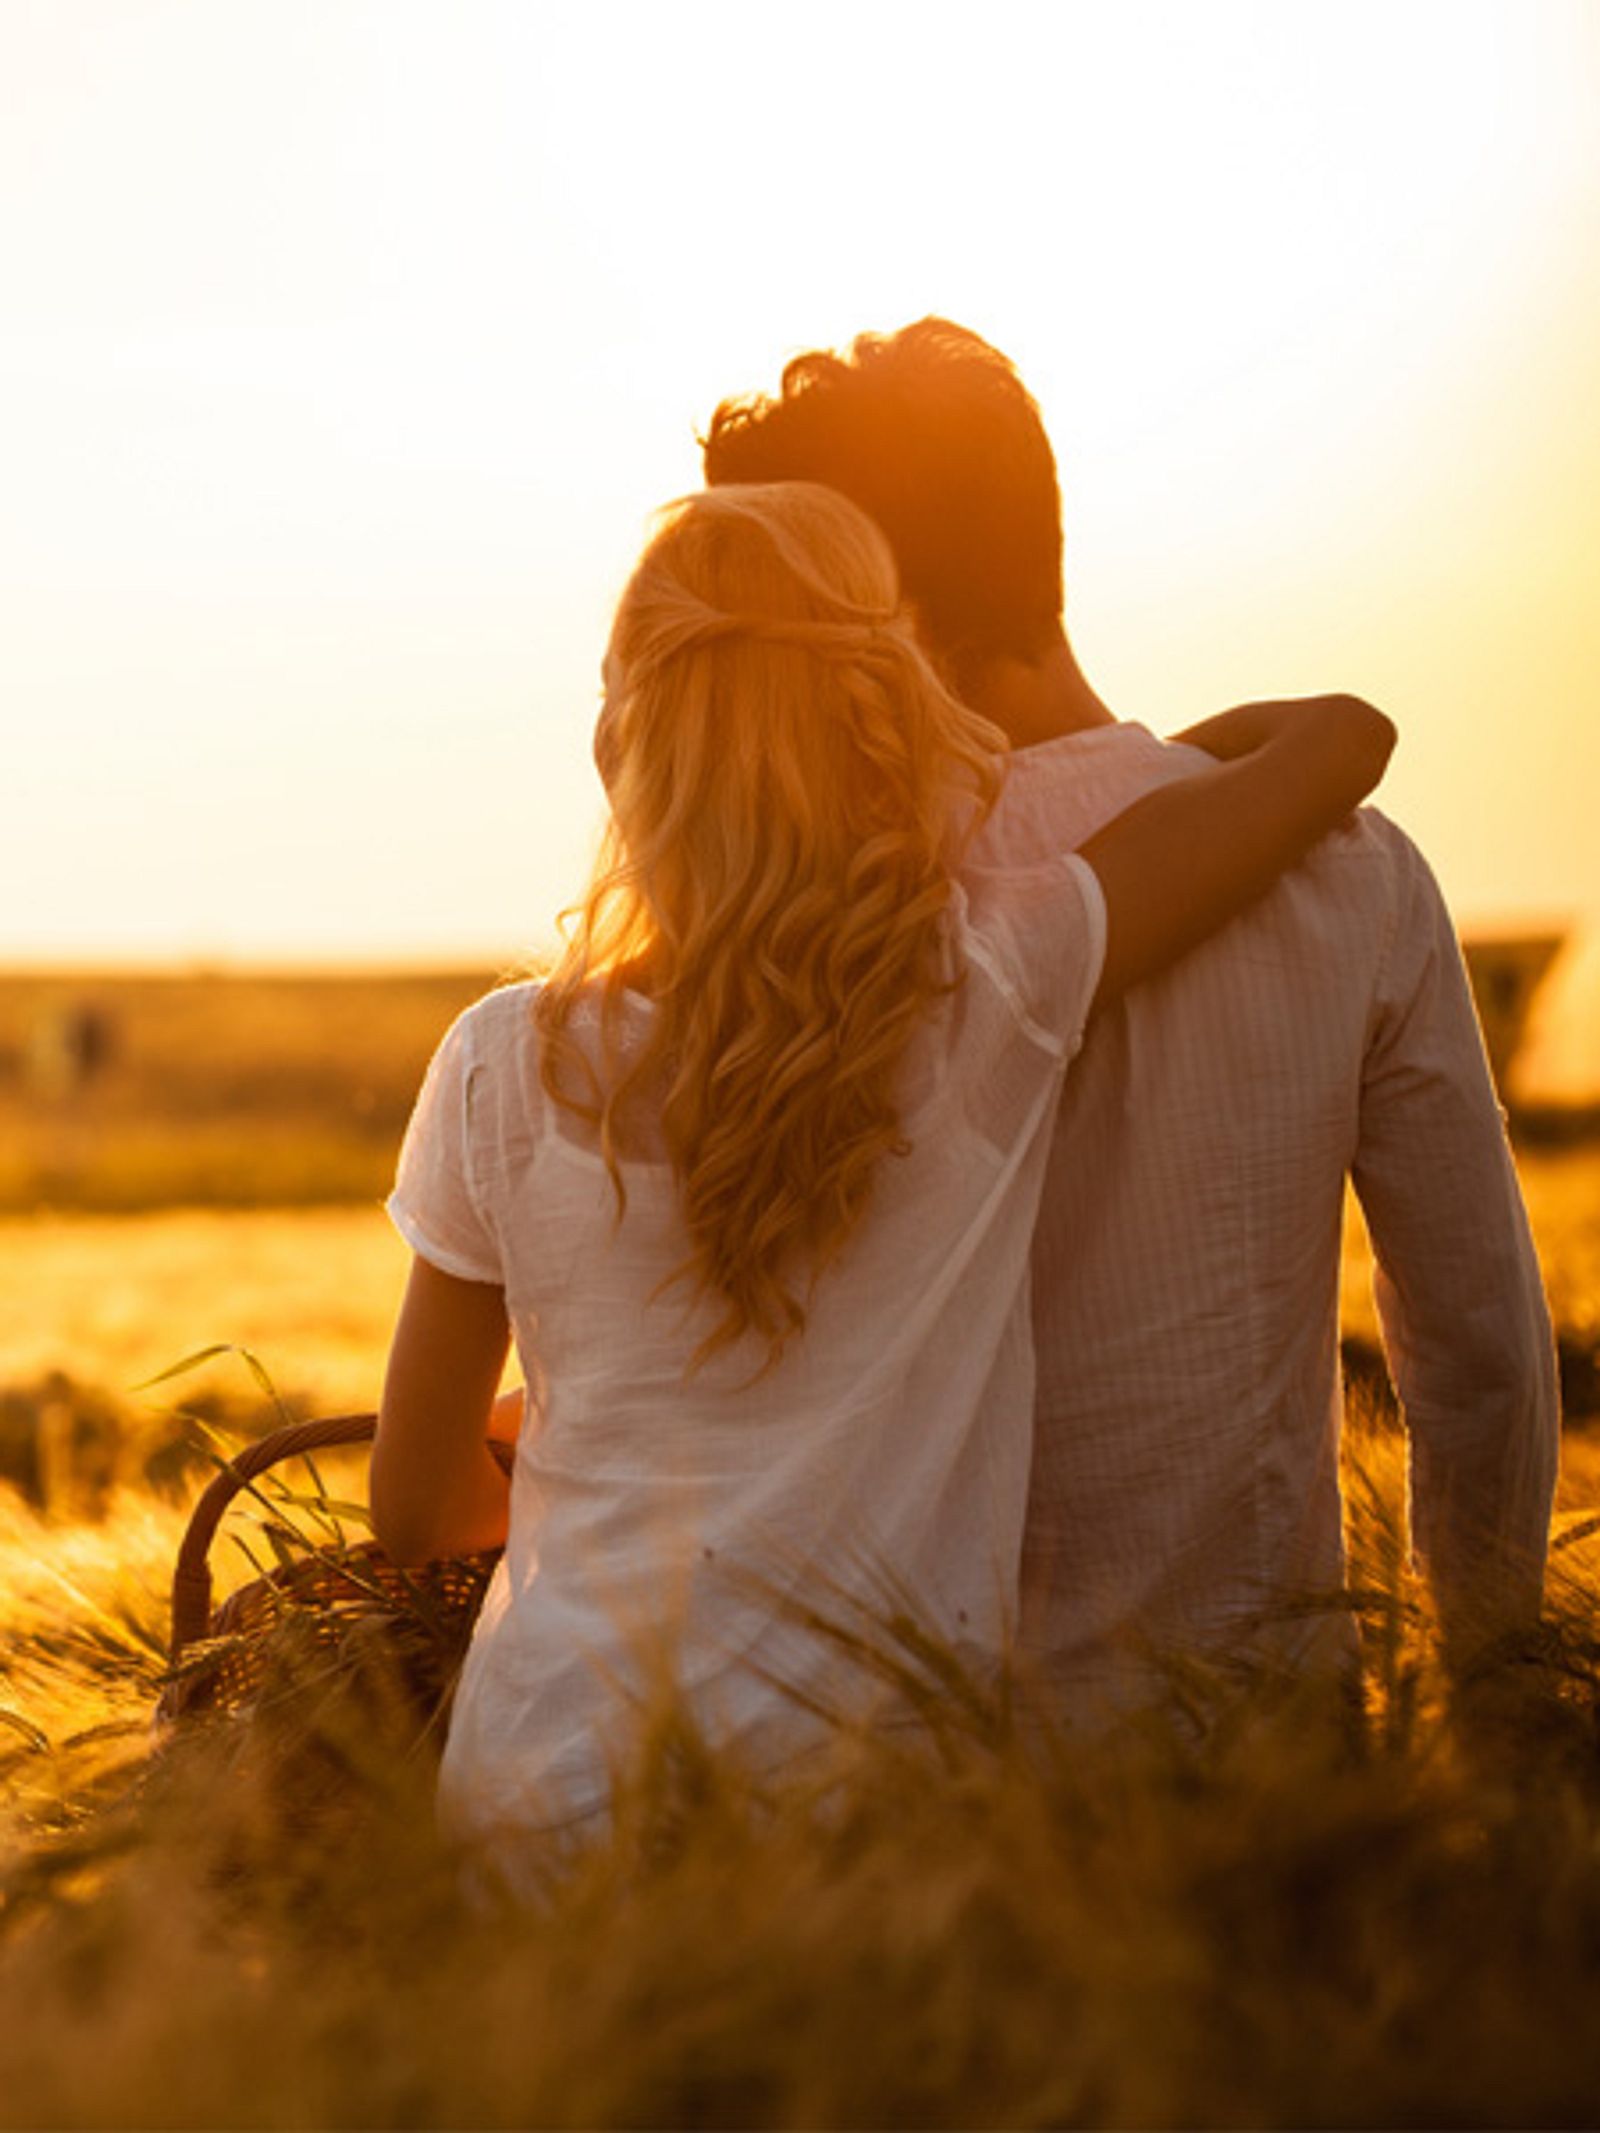 Wissenschaft der Liebe: 10 Fakten einer glücklichen Beziehung Wunderweib.